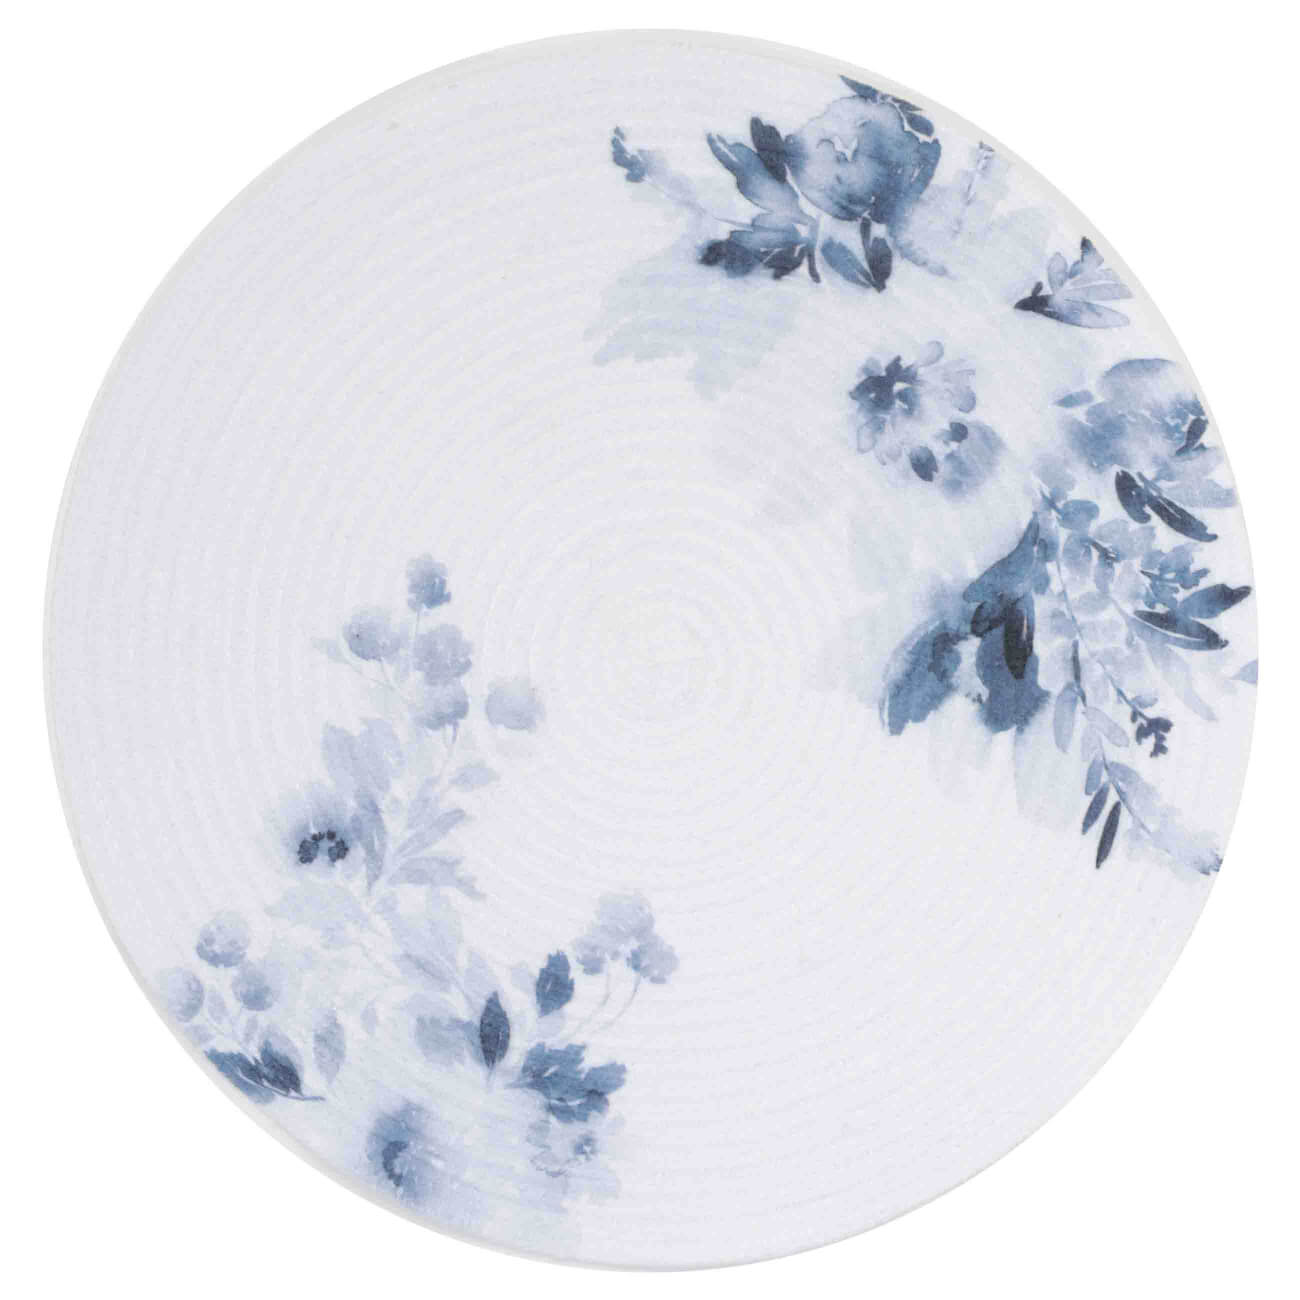 Салфетка под приборы, 38 см, полиэстер, круглая, белая, Синие цветы, Chenill print